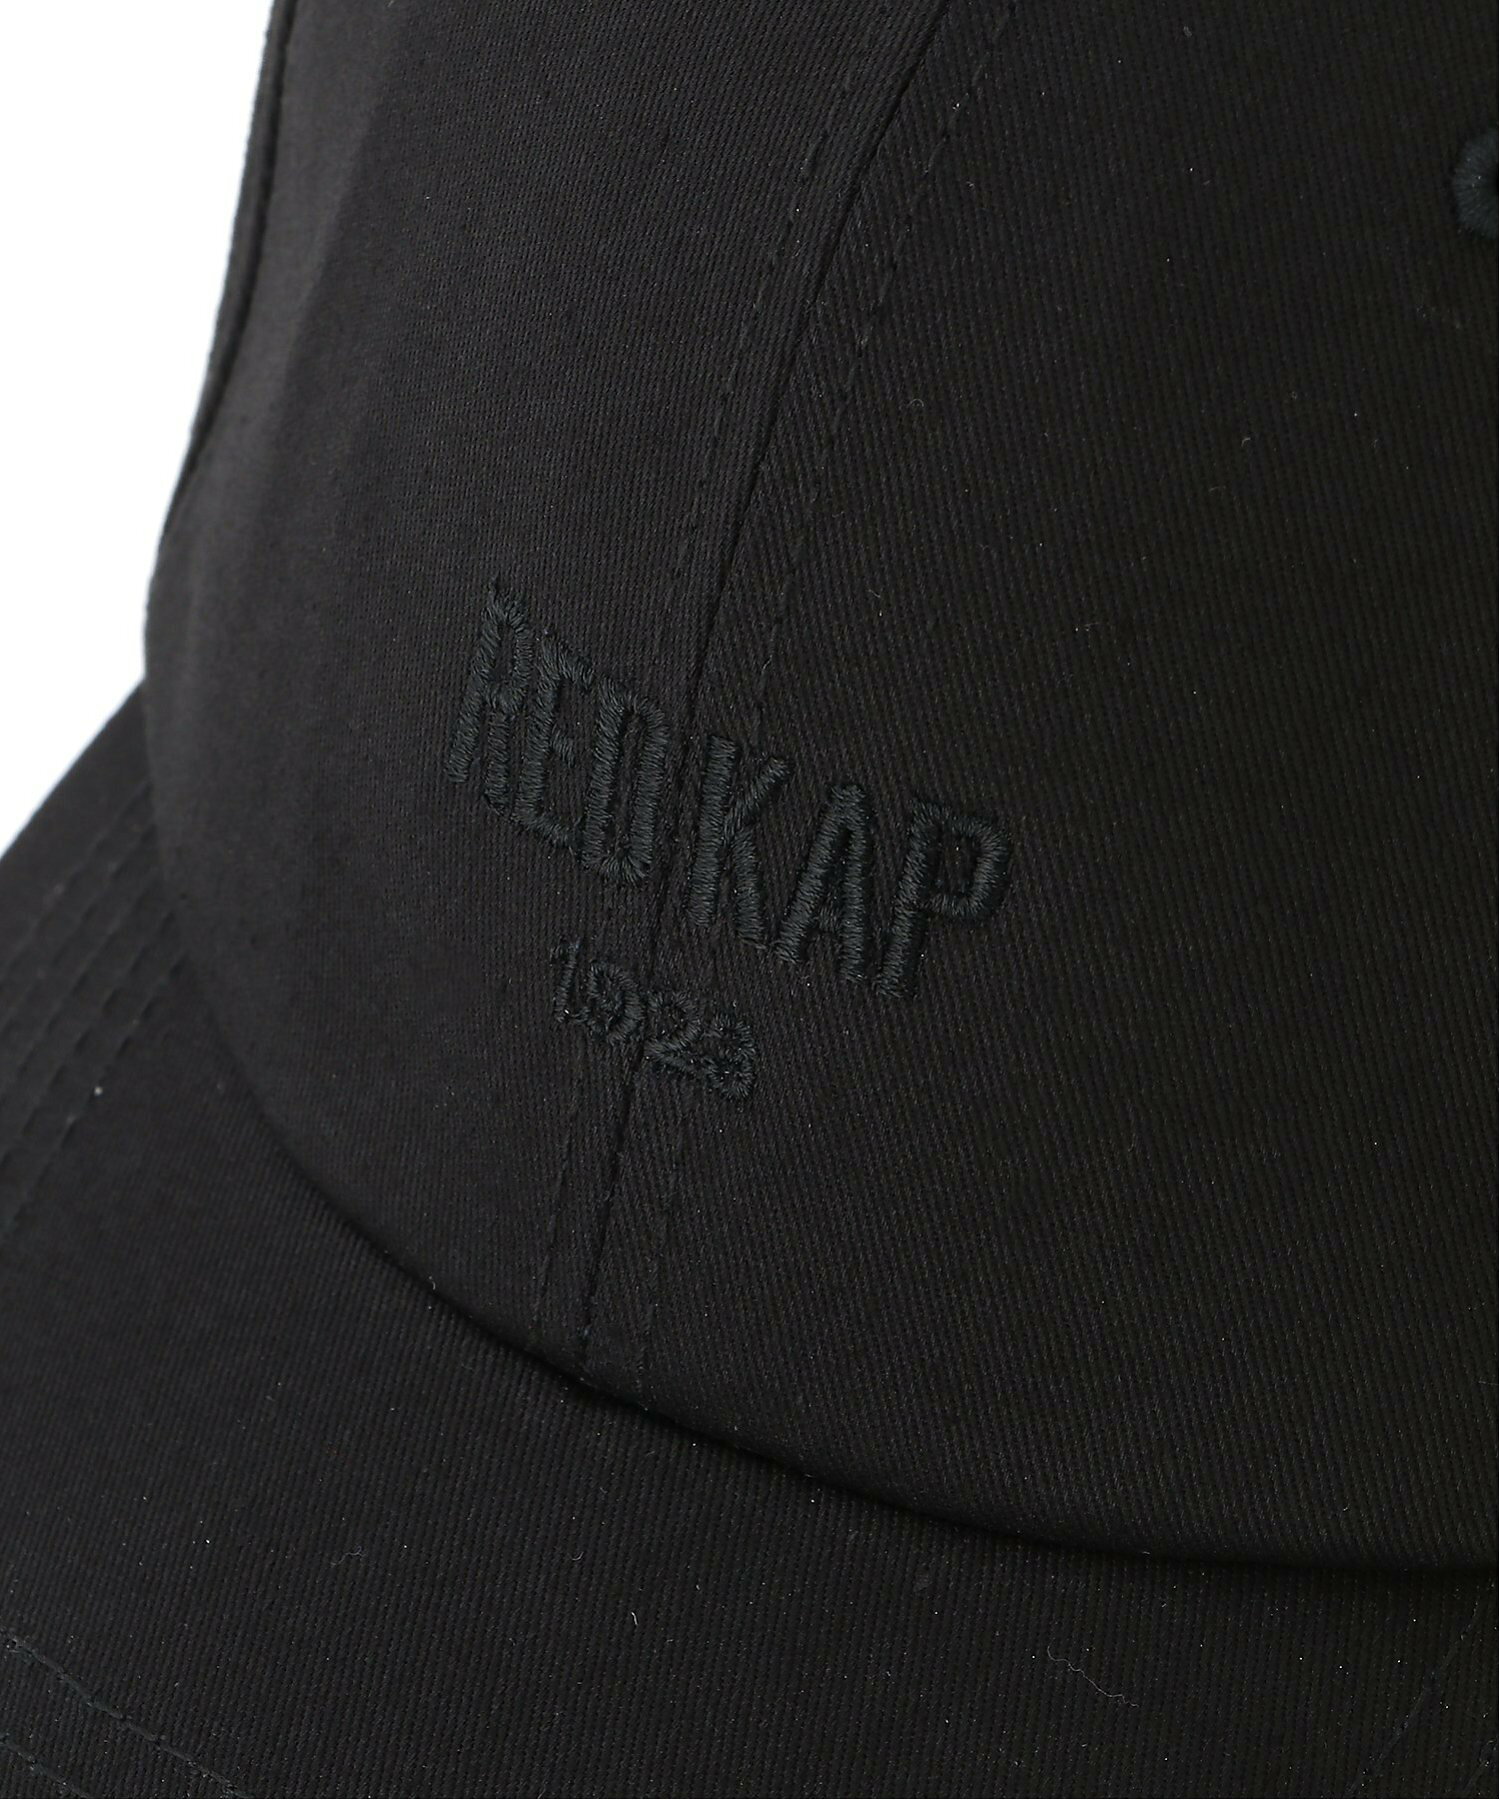 RED KAP/(U)【Kt】【RK9001】【RED KAP】MINI LOGO CAP